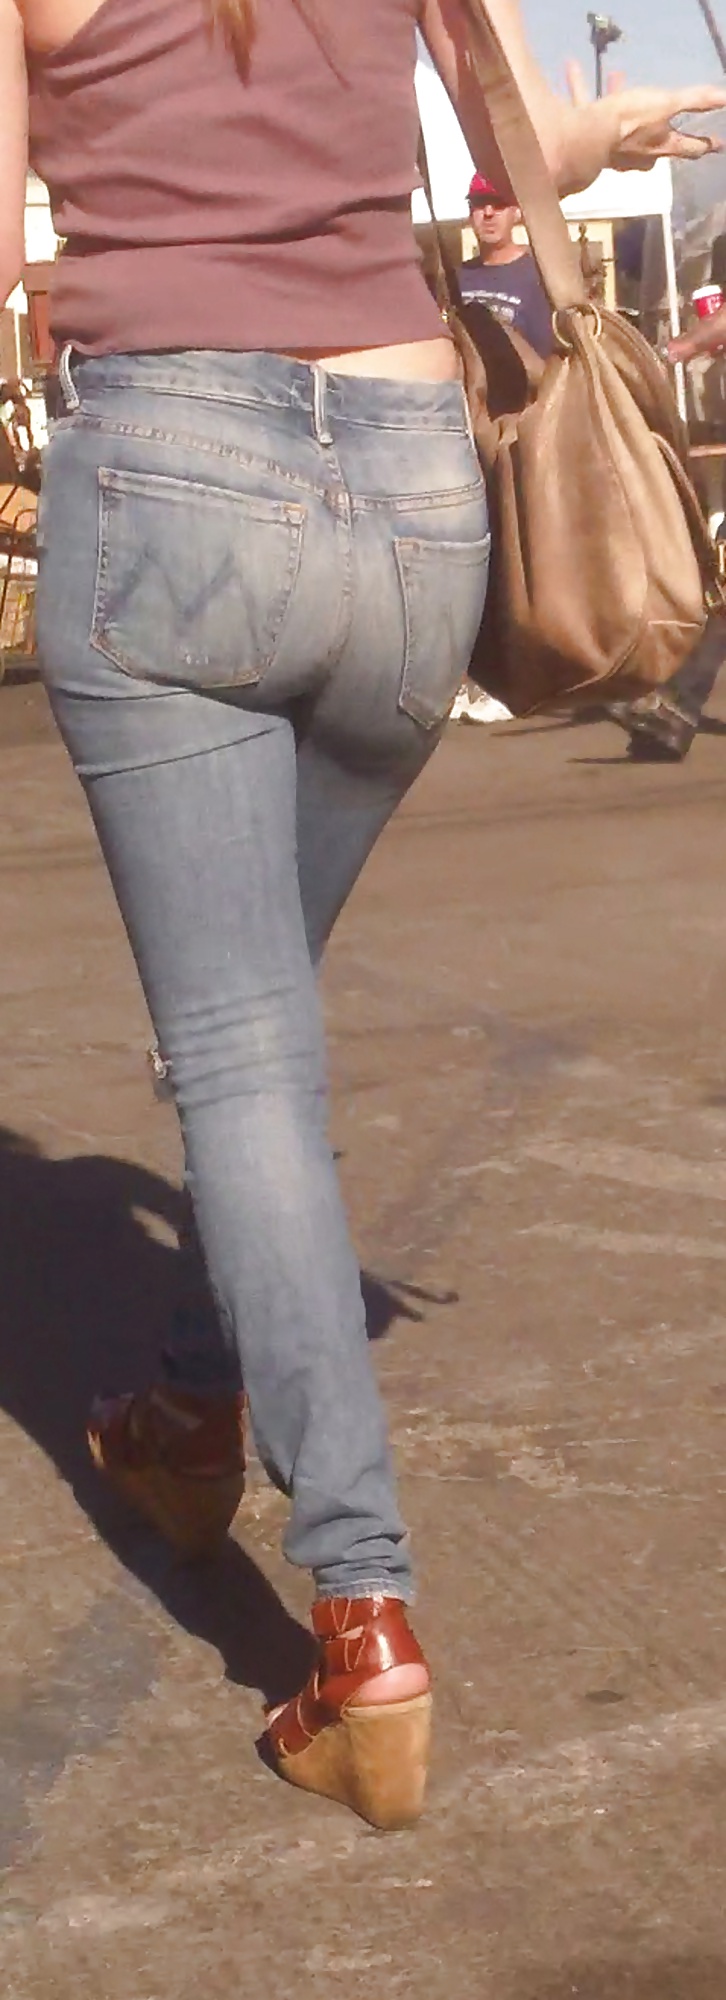 Popular teen girls ass & butt in jeans Part 6 #32009618